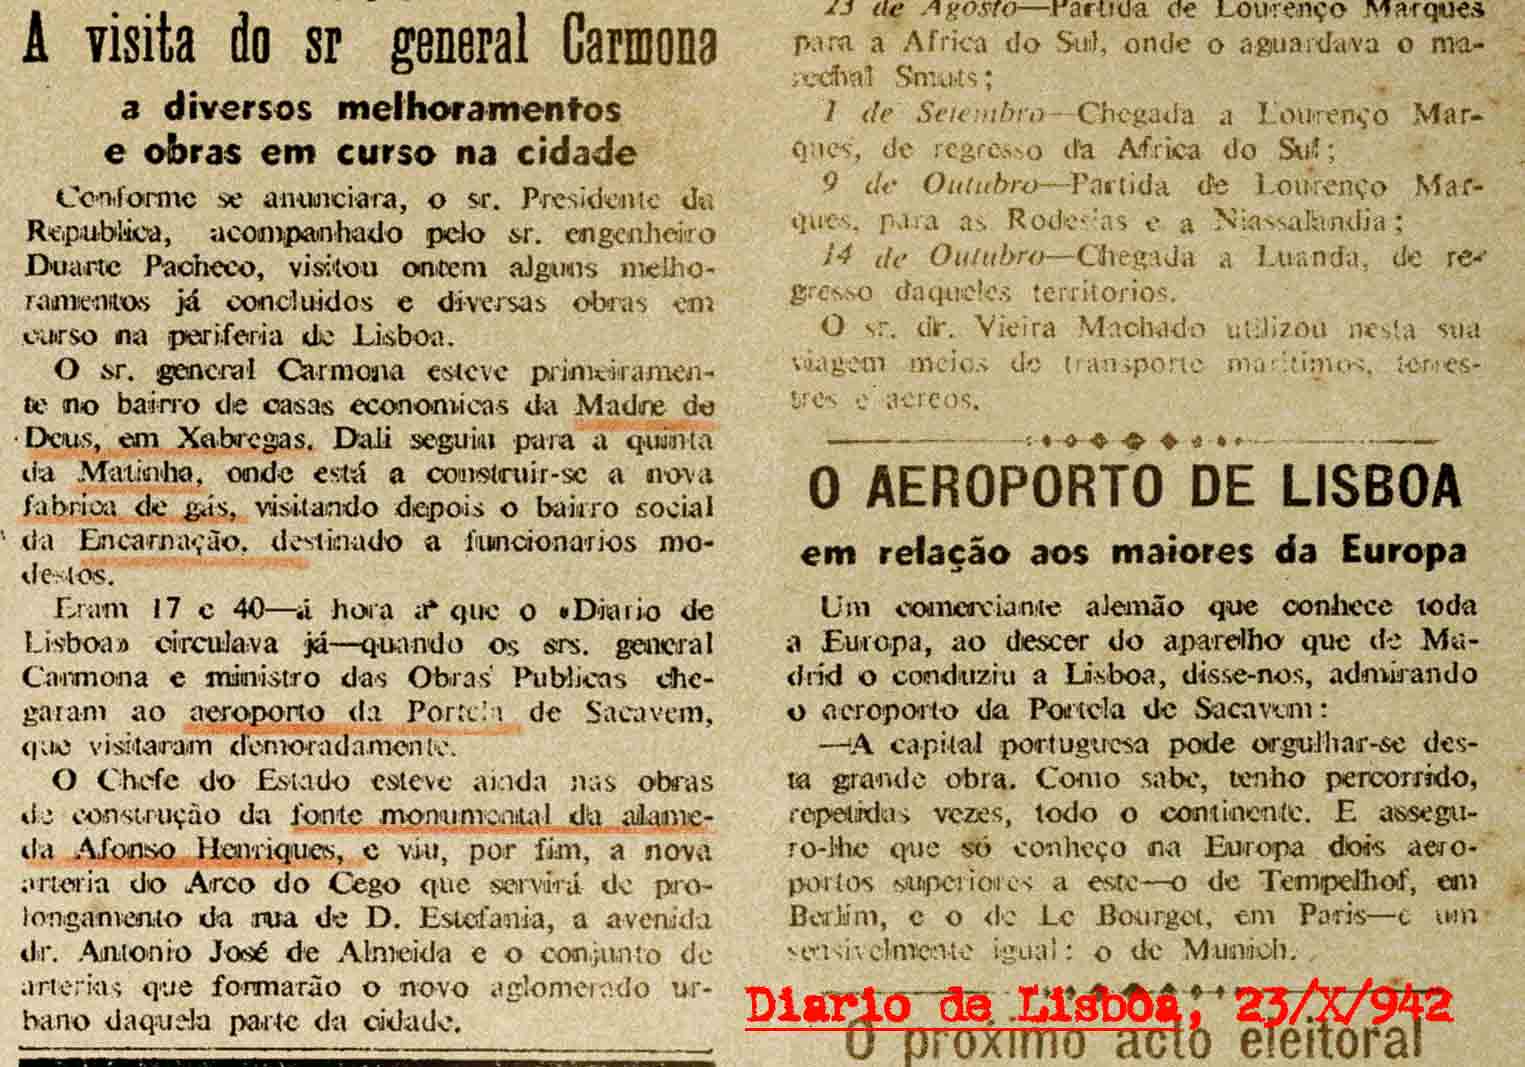 «A visita do sr. general Carmona a diversos melhoramentos em curso na cidade», Diario de Lisbôa, 23/X/942.